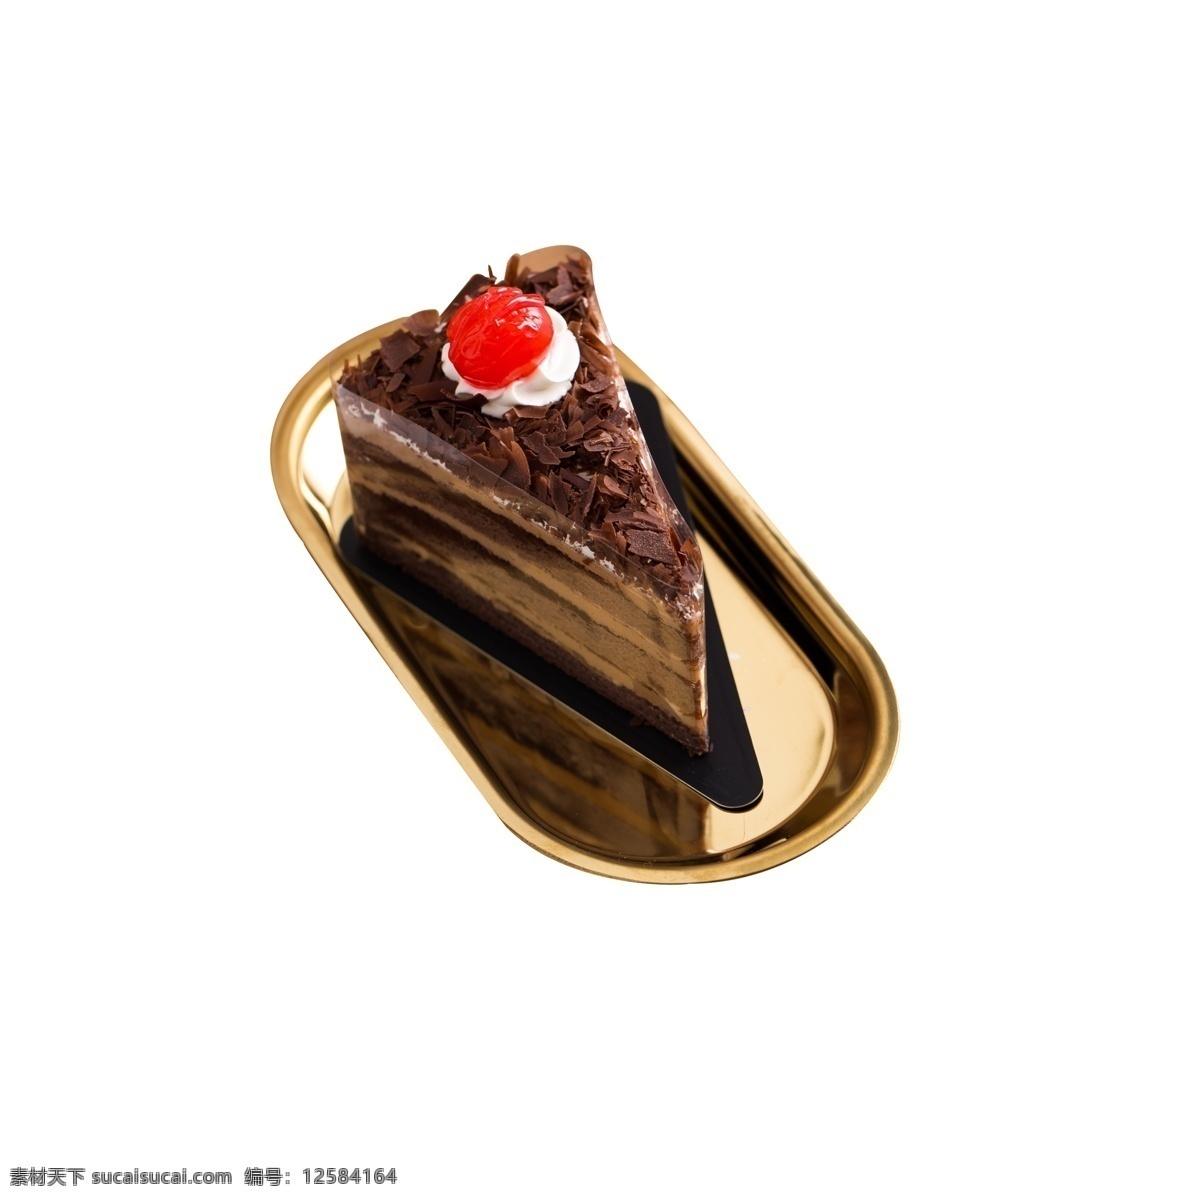 一块 美味 巧克力 蛋糕 巧克力慕斯 巧克力蛋糕 甜品 甜点 甜食 黑巧克力 黑巧克力蛋糕 黑森林 甜